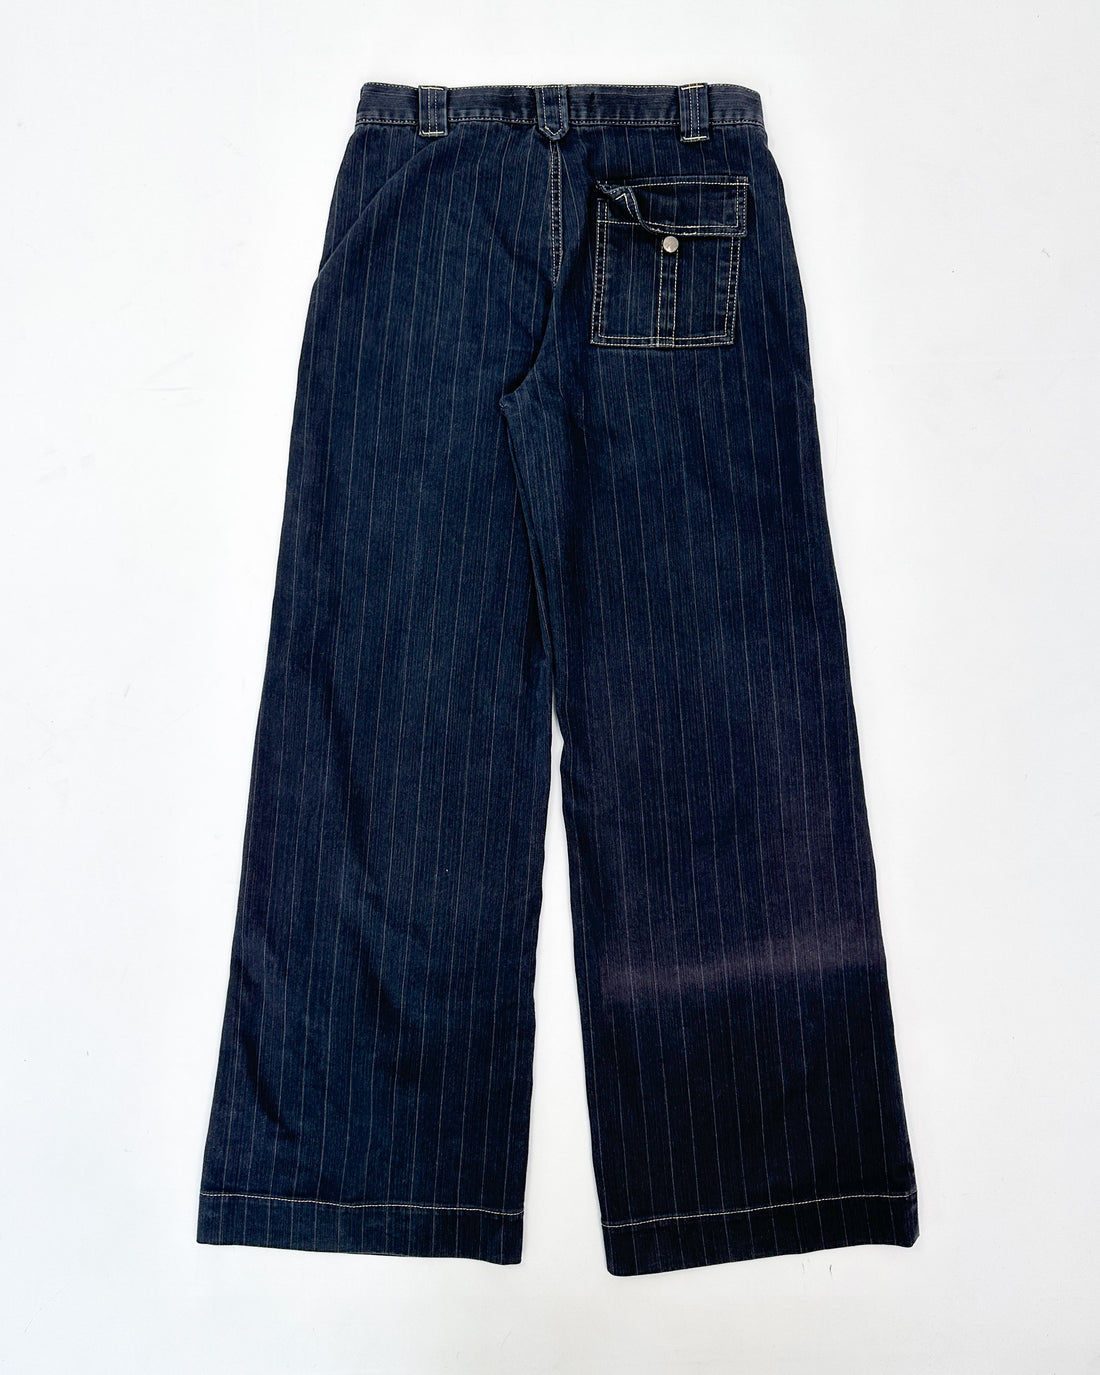 Just Cavalli Striped Denim Pants 1990's